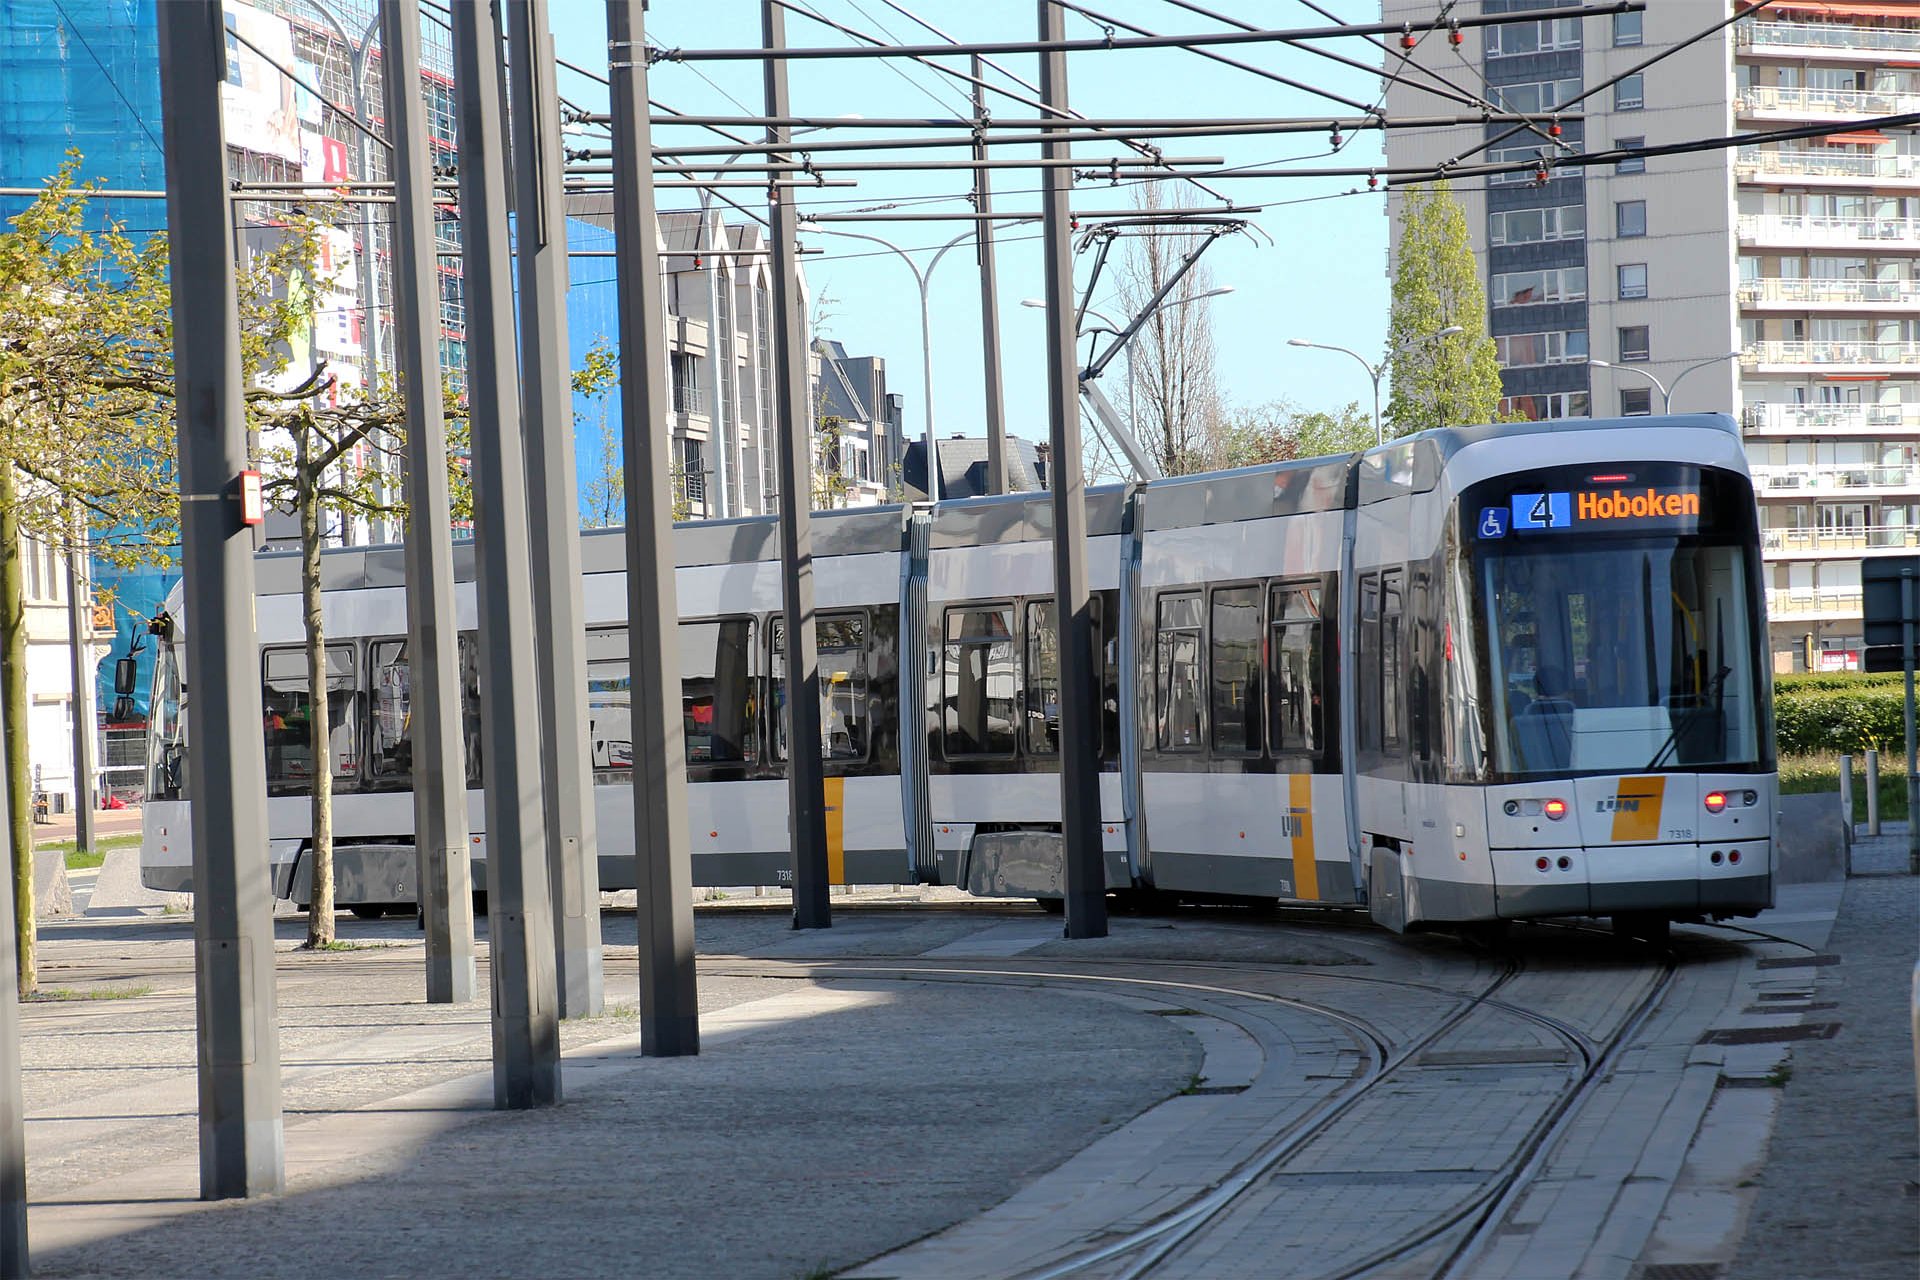 Flexity Outlook2 7318 Im Juni 2015 wurde bekanntgegeben, dass Antwerpen bis 2018 weitere 24 Straßenbahnen, 14 davon in der langen Version, erhält. In June 2015 it was announced, that Antwerp will receive another 24 new trams, 14 of them in the long version till 2018.